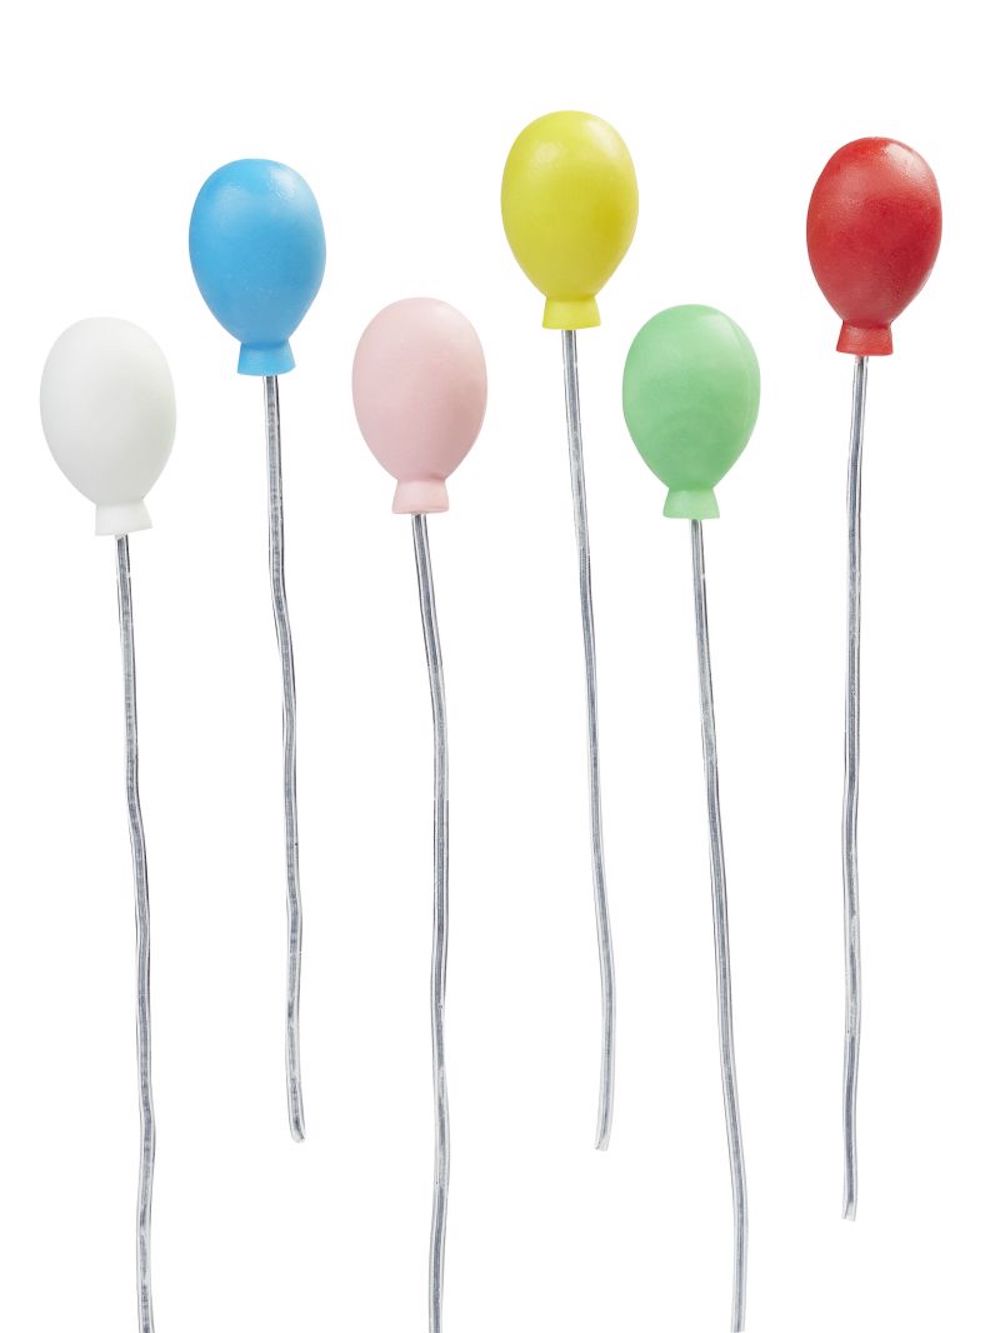 Miniatur Wichteltür Luftballons, farbig sort. 1,6x2,4cm, Set 6 Stck.